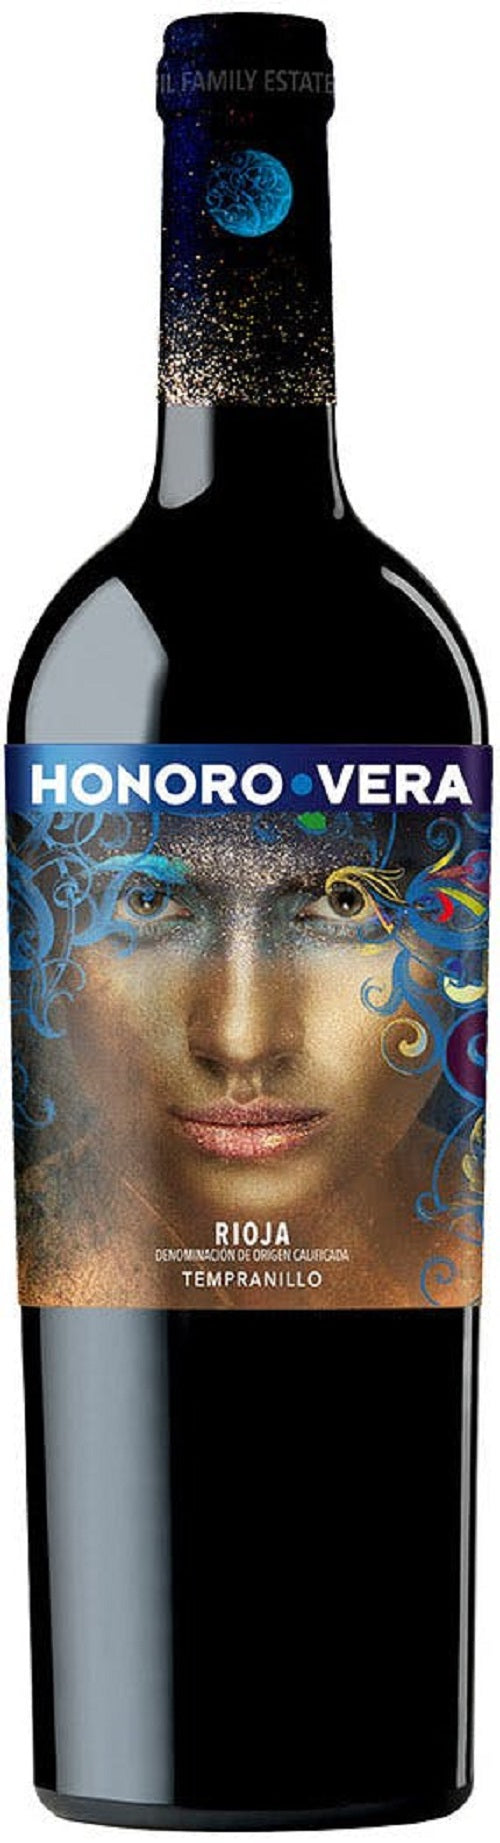 Honoro Vera Rioja 2019